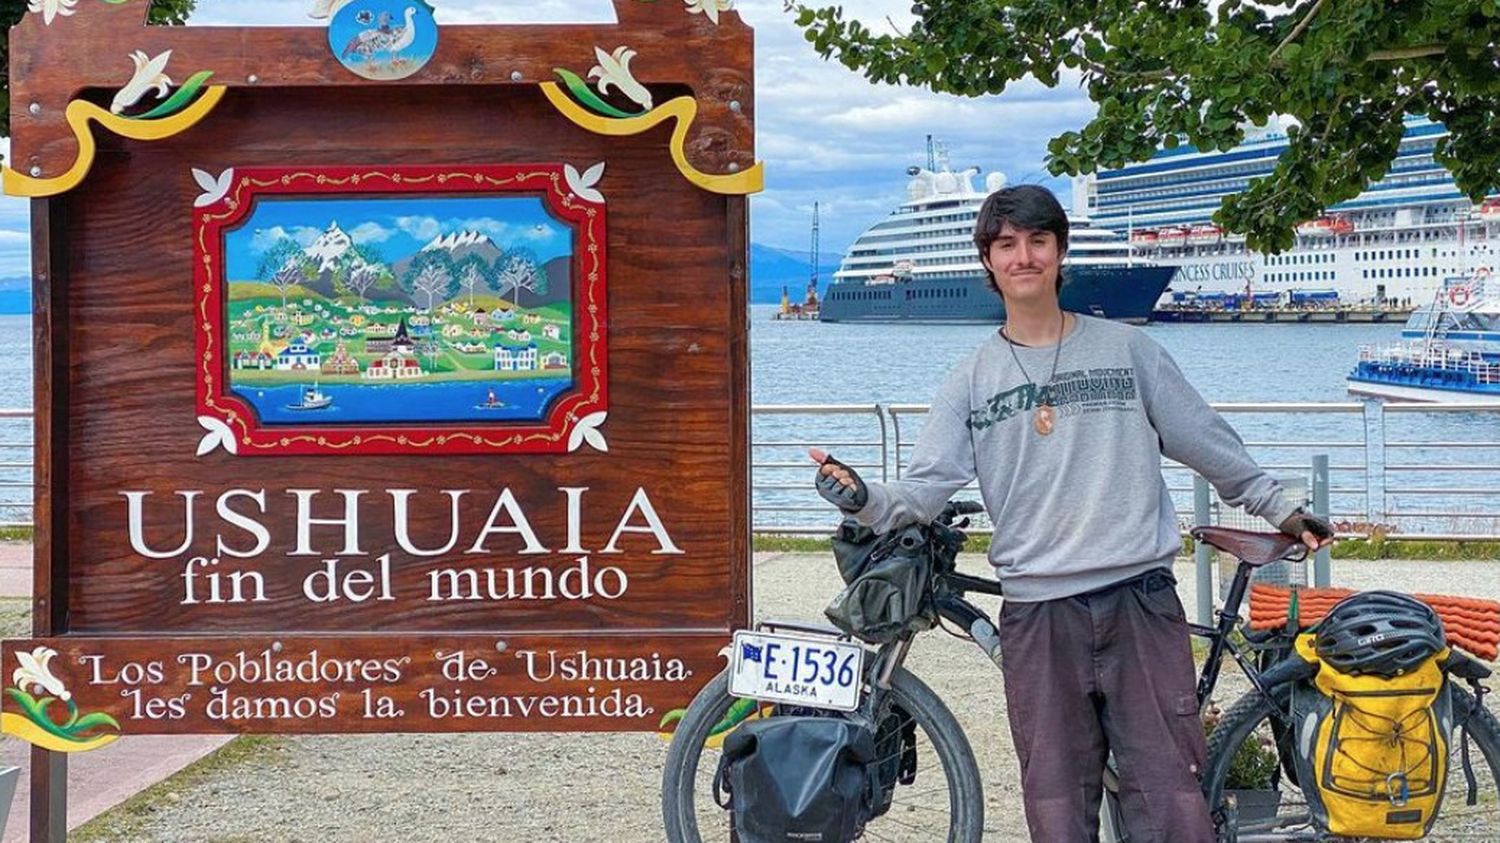 De l’Alaska à Ushuaia, Liam Garner, 17 ans, devient le plus jeune cycliste à traverser les trois continents américains